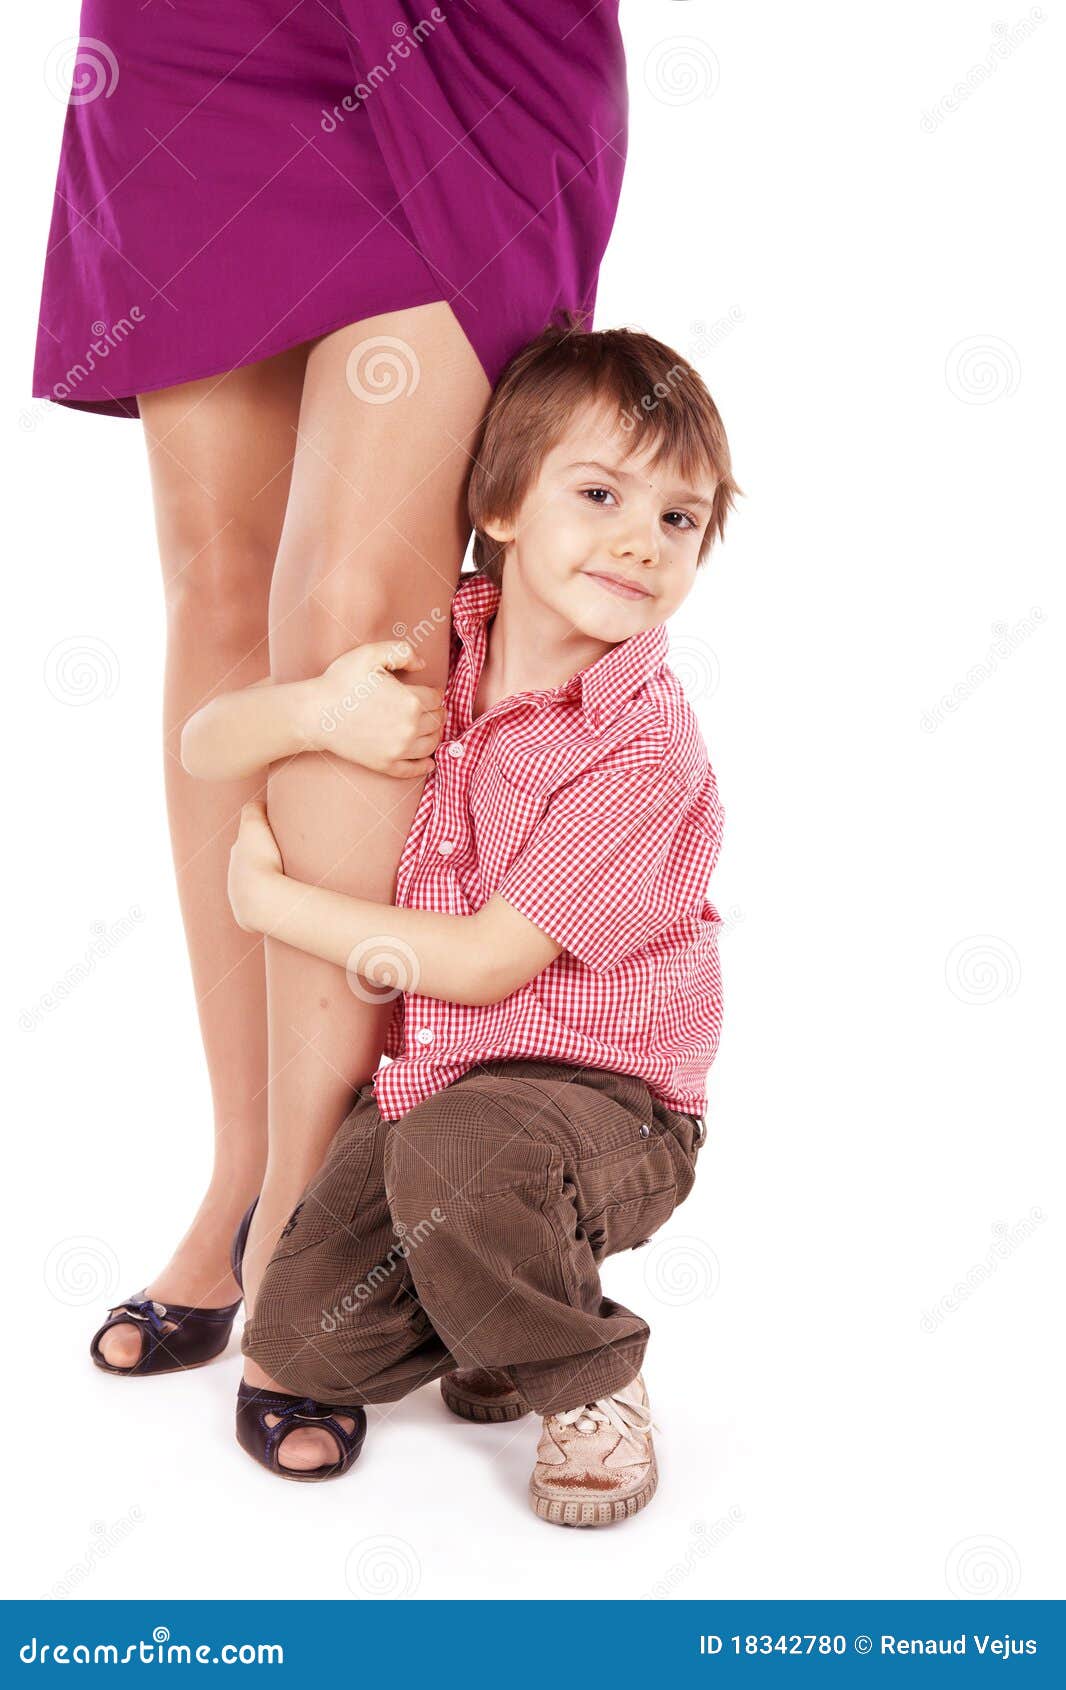 Сижу у мамы на коленях. Ребенок обнимает за ногу. Ребенок обнимает маму за ногу. Мальчик обнимает маму за ногу.